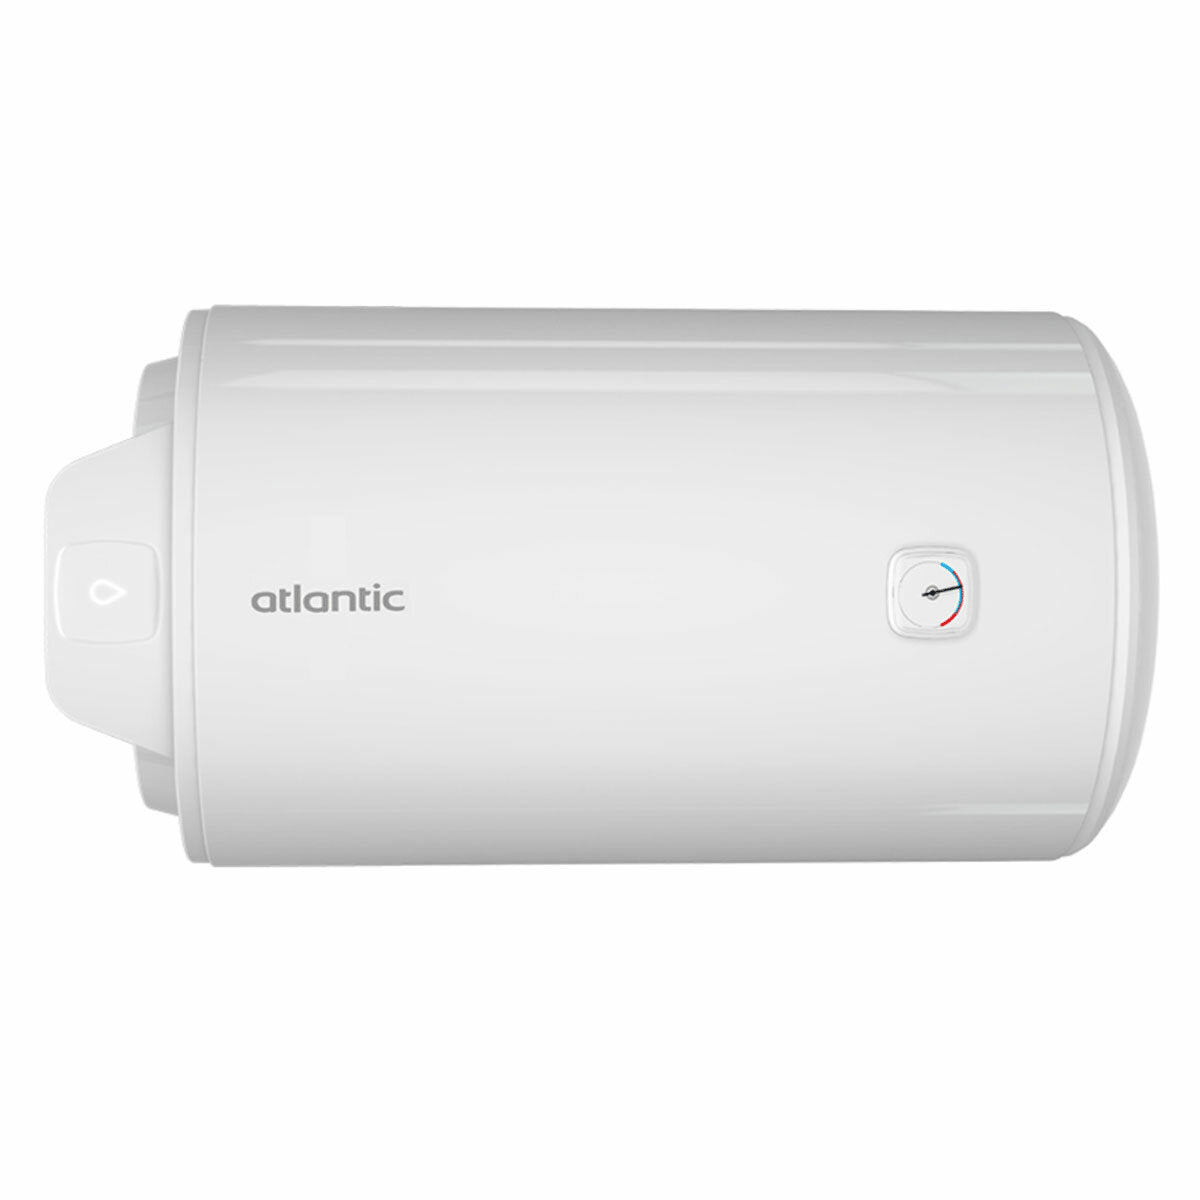 Atlantic EGO 50 horizontaler elektrischer Warmwasserbereiter 50 Liter 2 Jahre Garantie